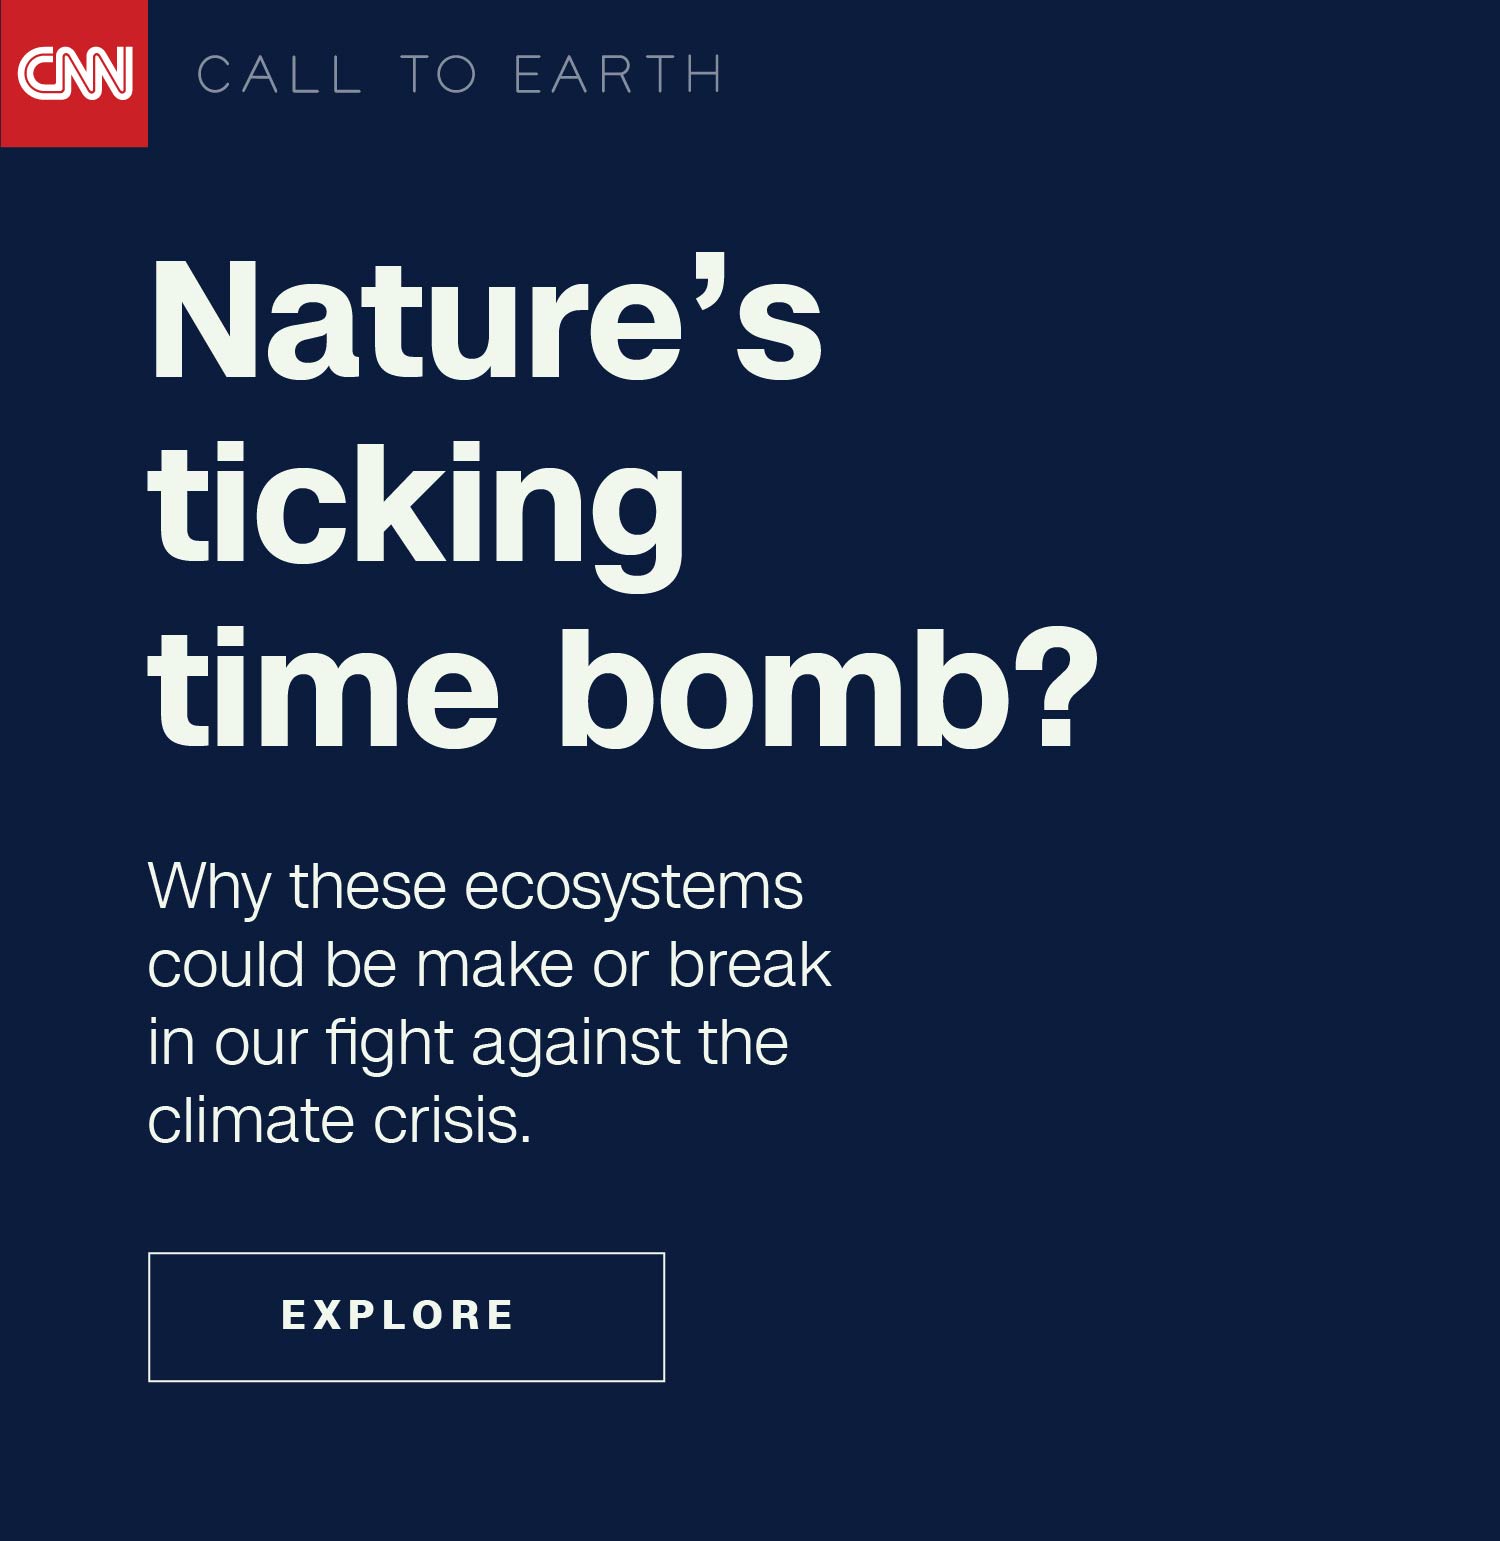 La bomba a orologeria della natura?